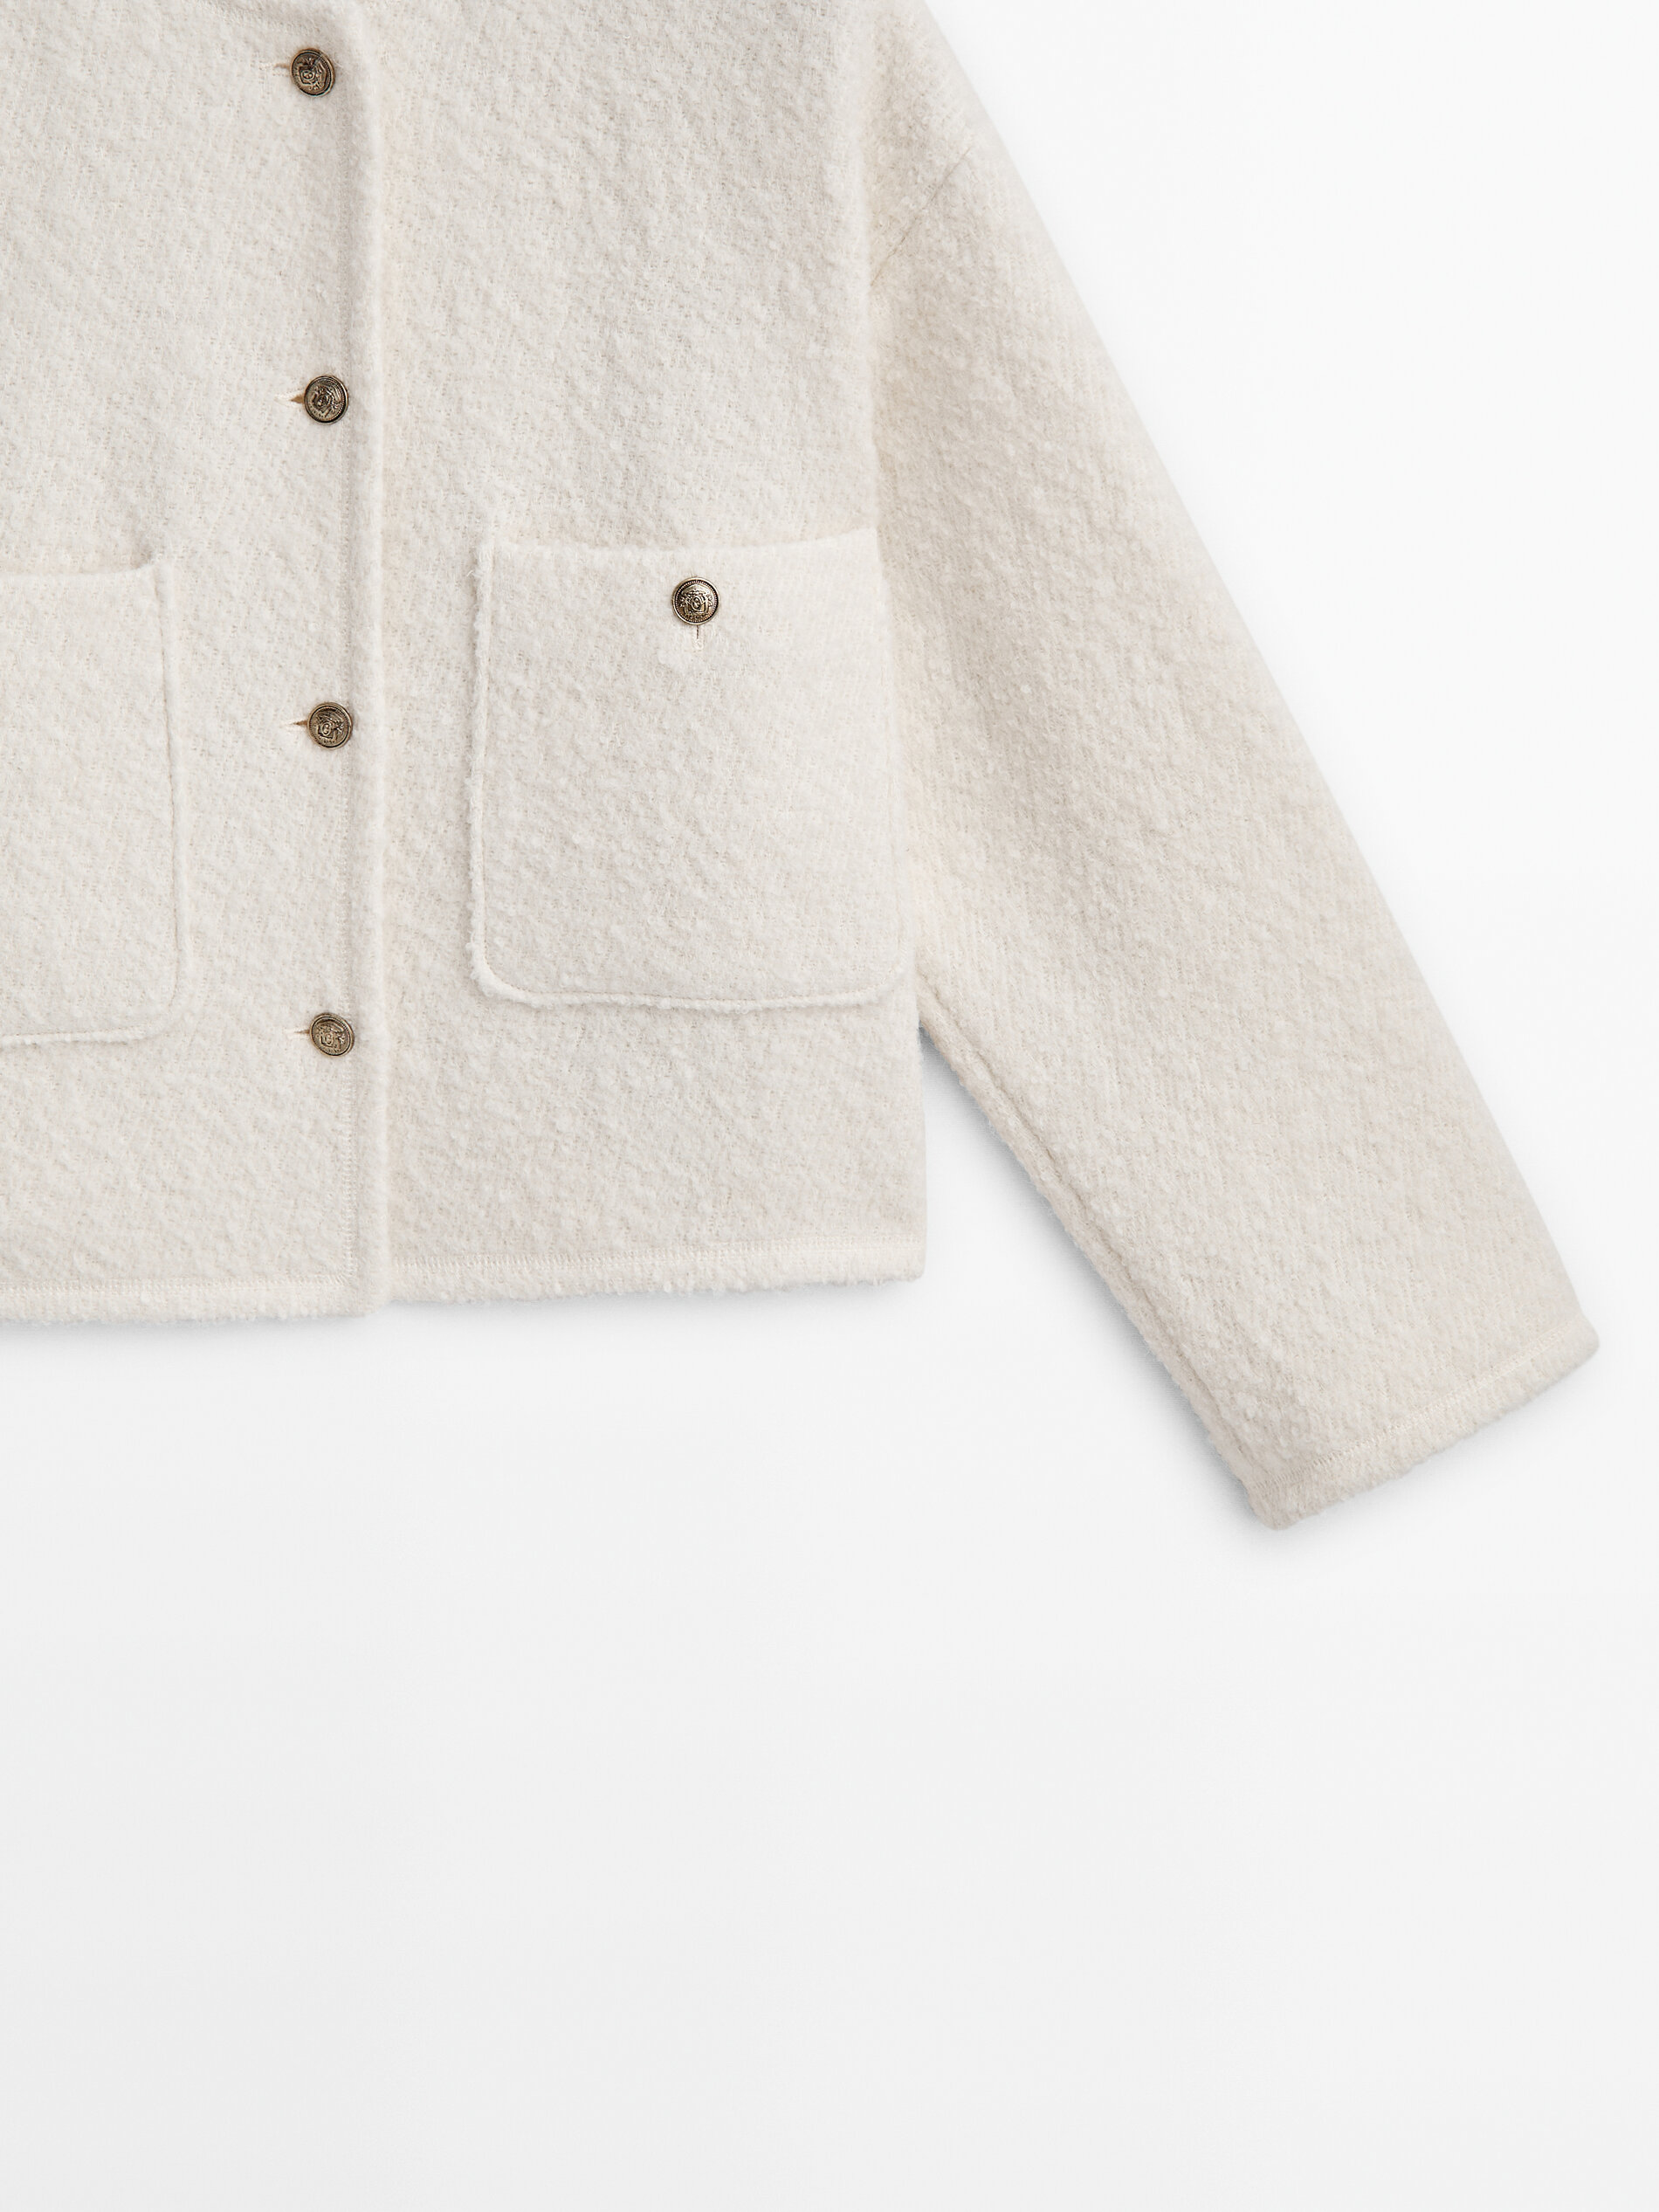 Men Denim Jacket Drop Shoulder Loose Tops Oversized Coat Pocket Casual  Jacket | eBay